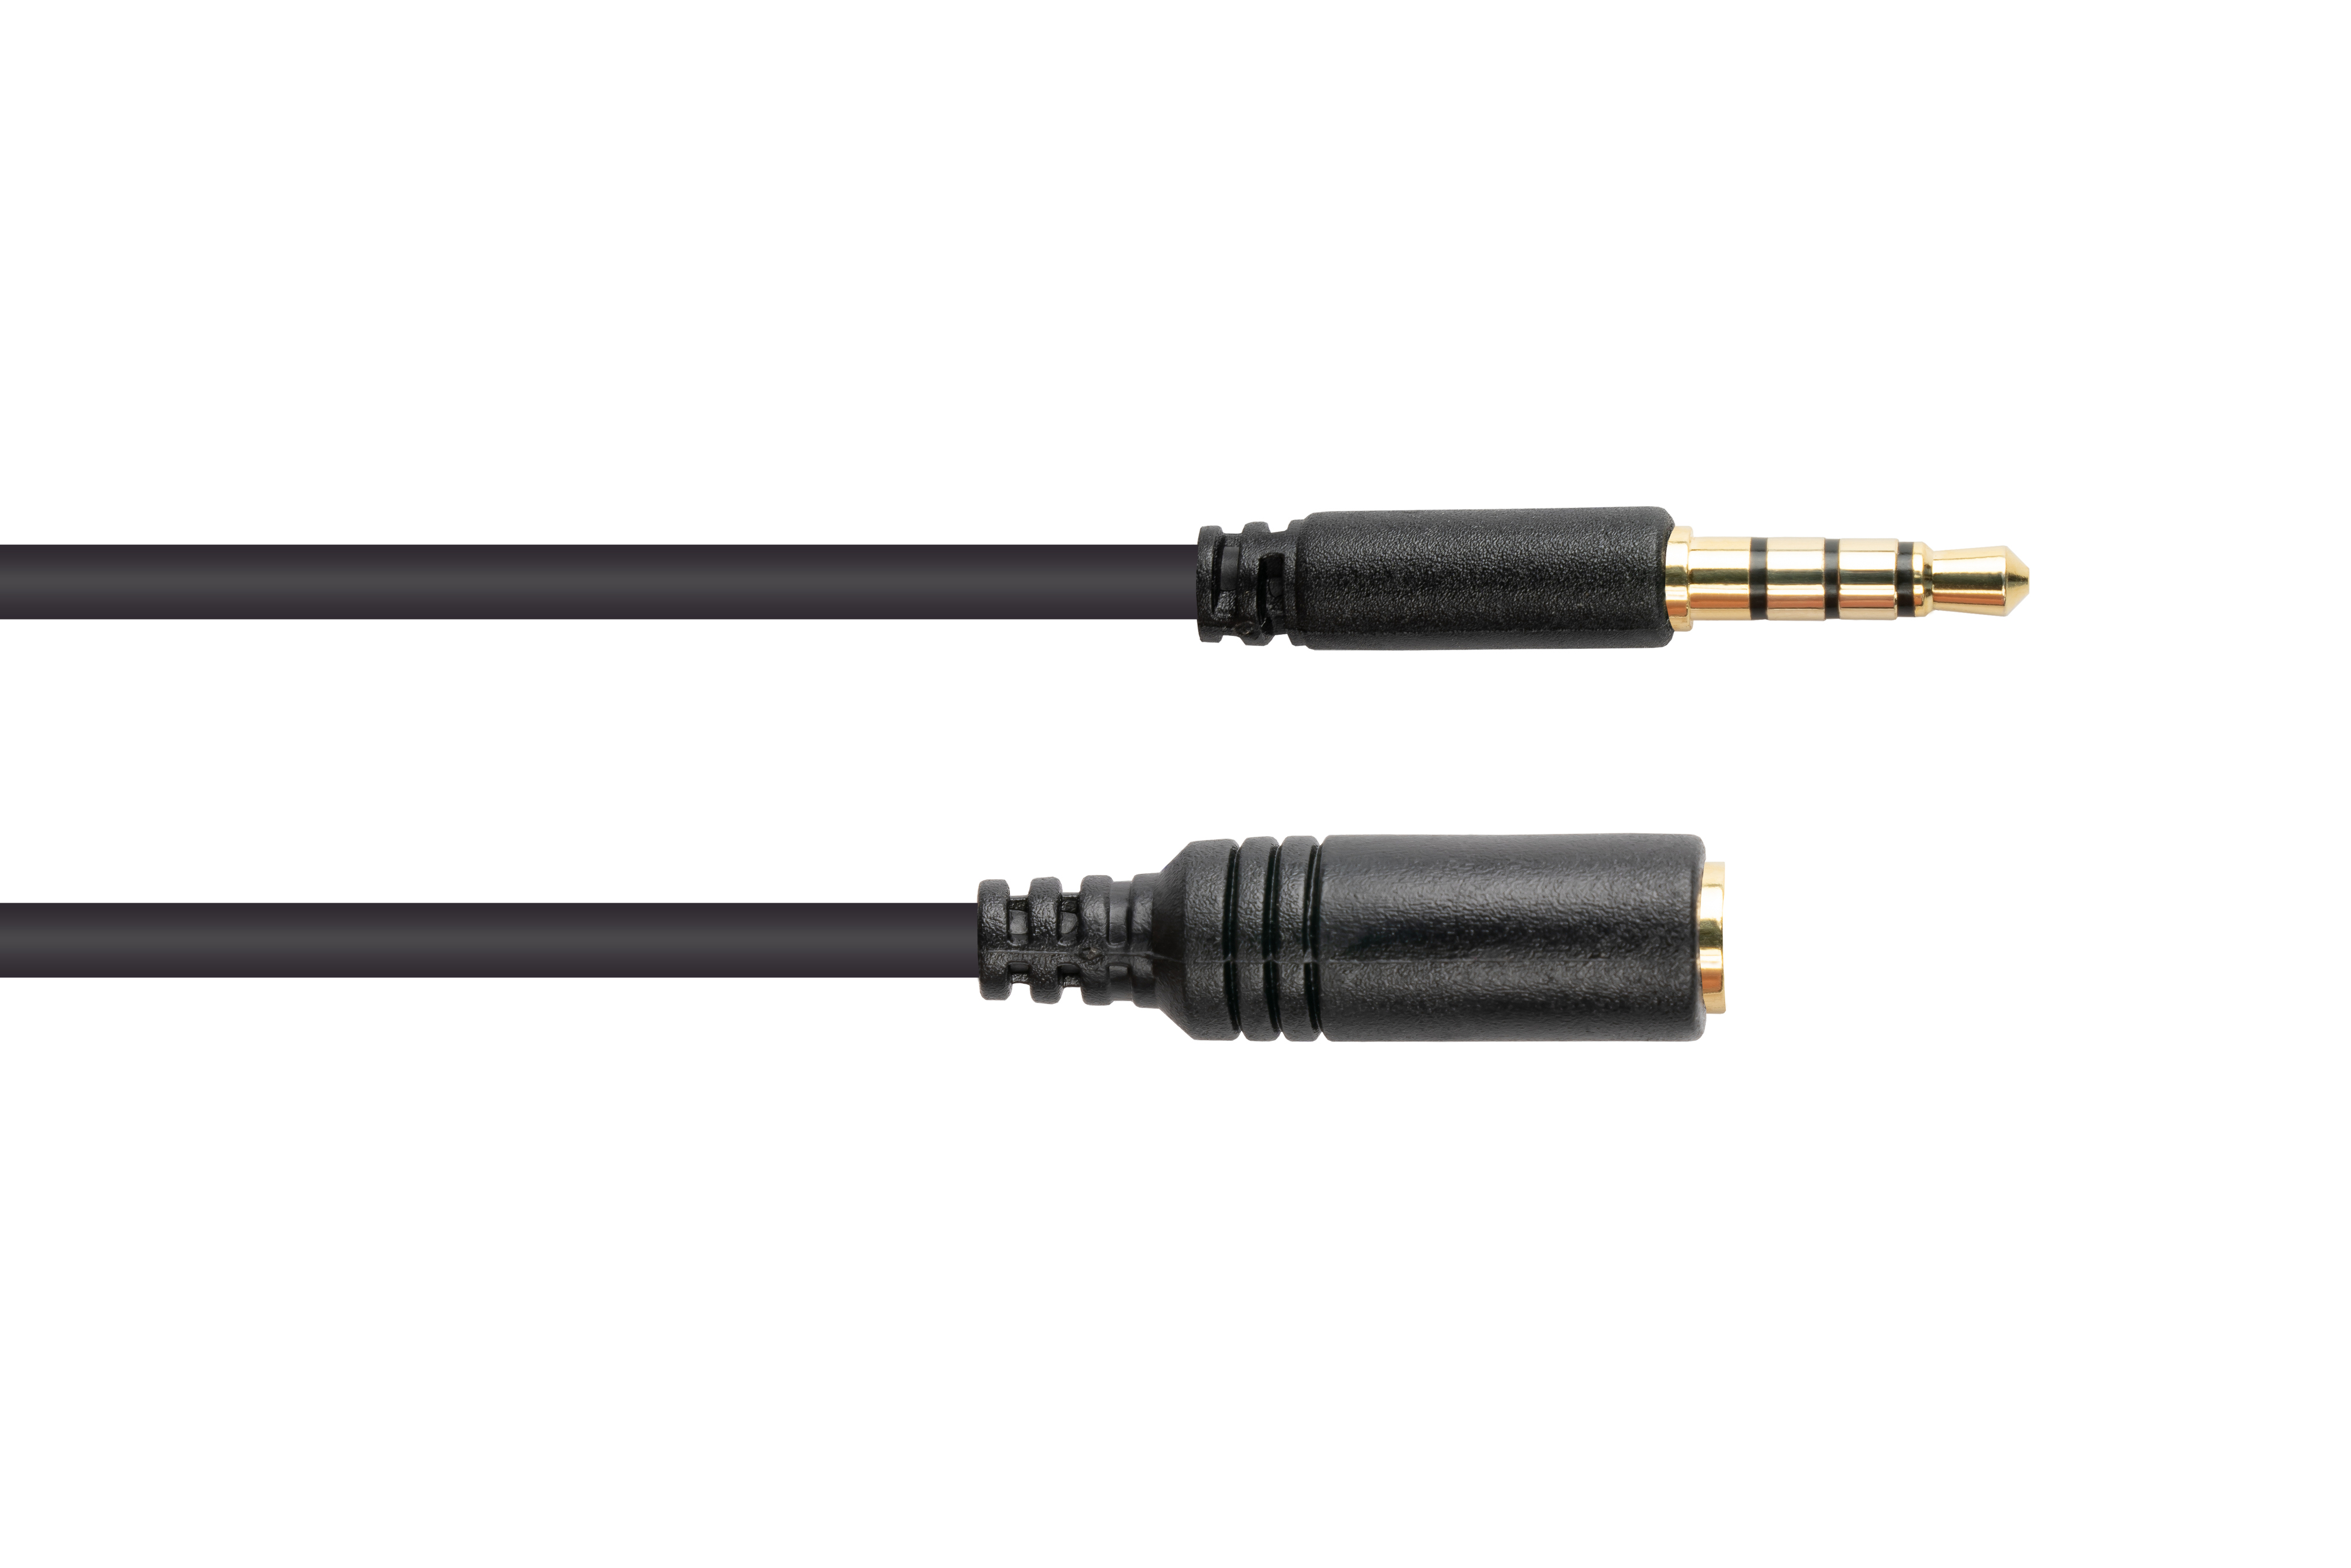 GOOD CONNECTIONS 3,5mm, Audio vergoldete Klinkenverlängerung Stecker an CU, (4polig), Buchse Kontakte, schwarz